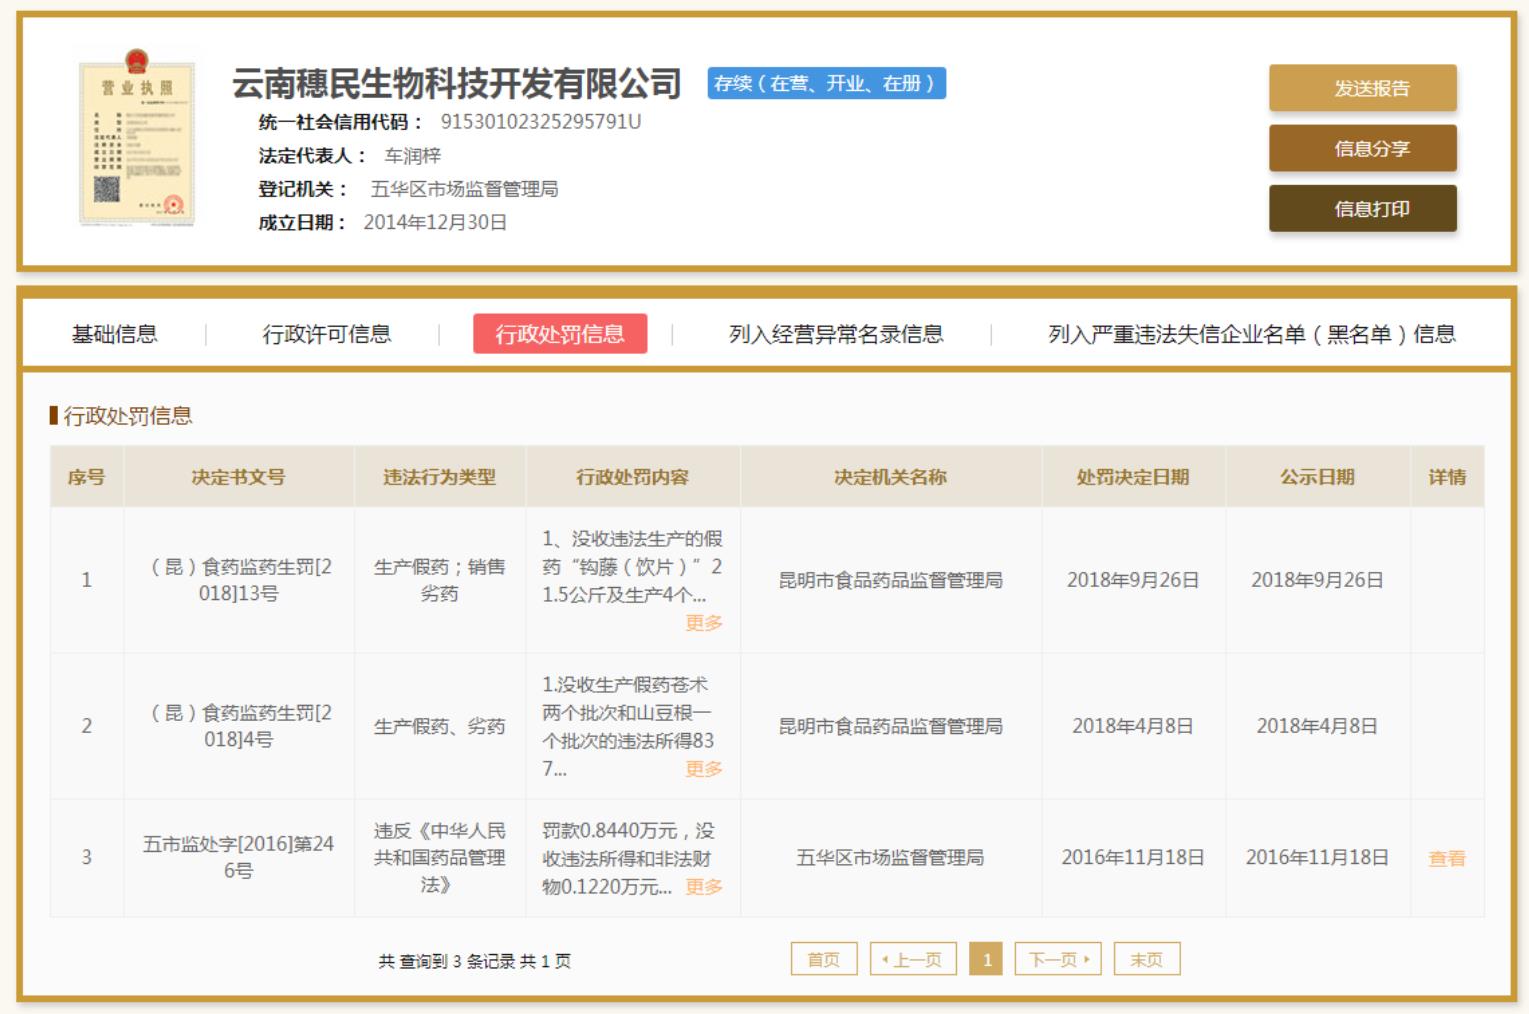 国家企业信用信息公示系统显示，云南穗民生物企业数次因生产假药劣药等行为被行政处罚